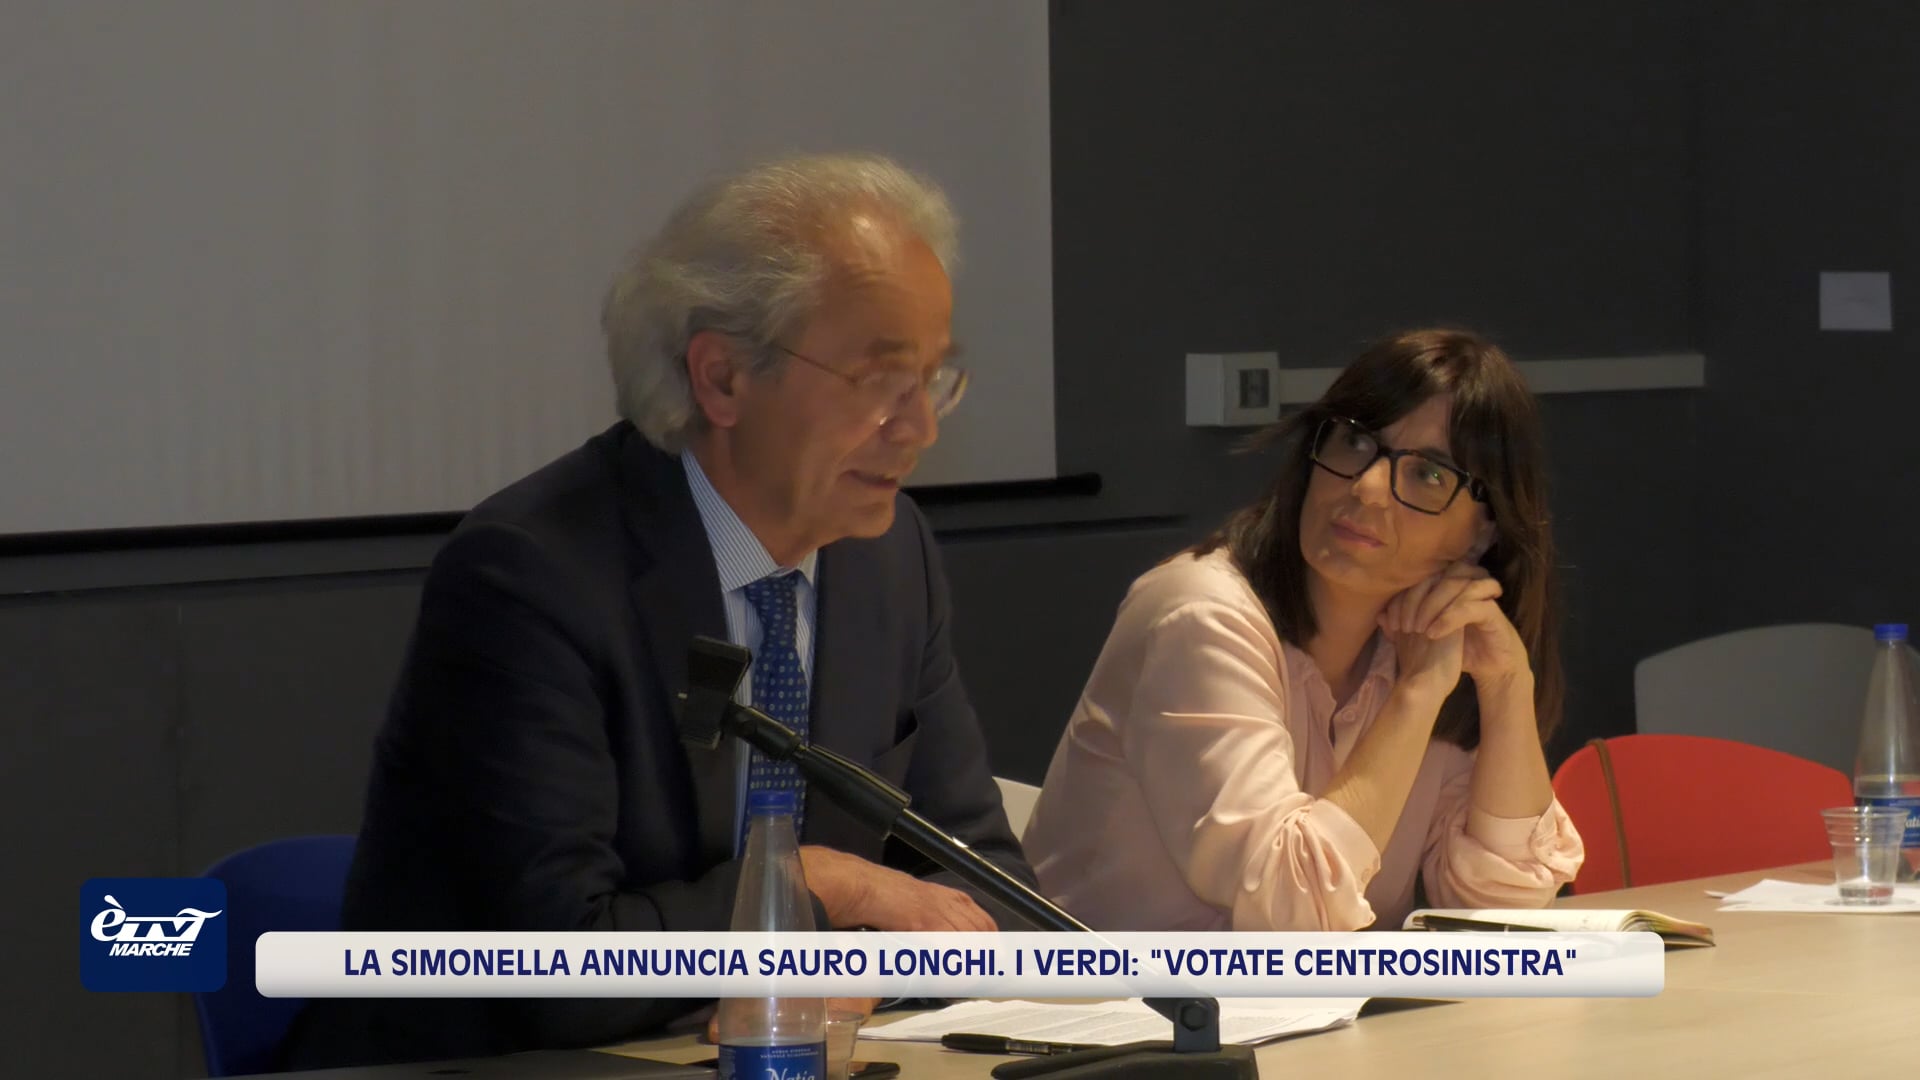 La Simonella annuncia Sauro Longhi. I Verdi: 